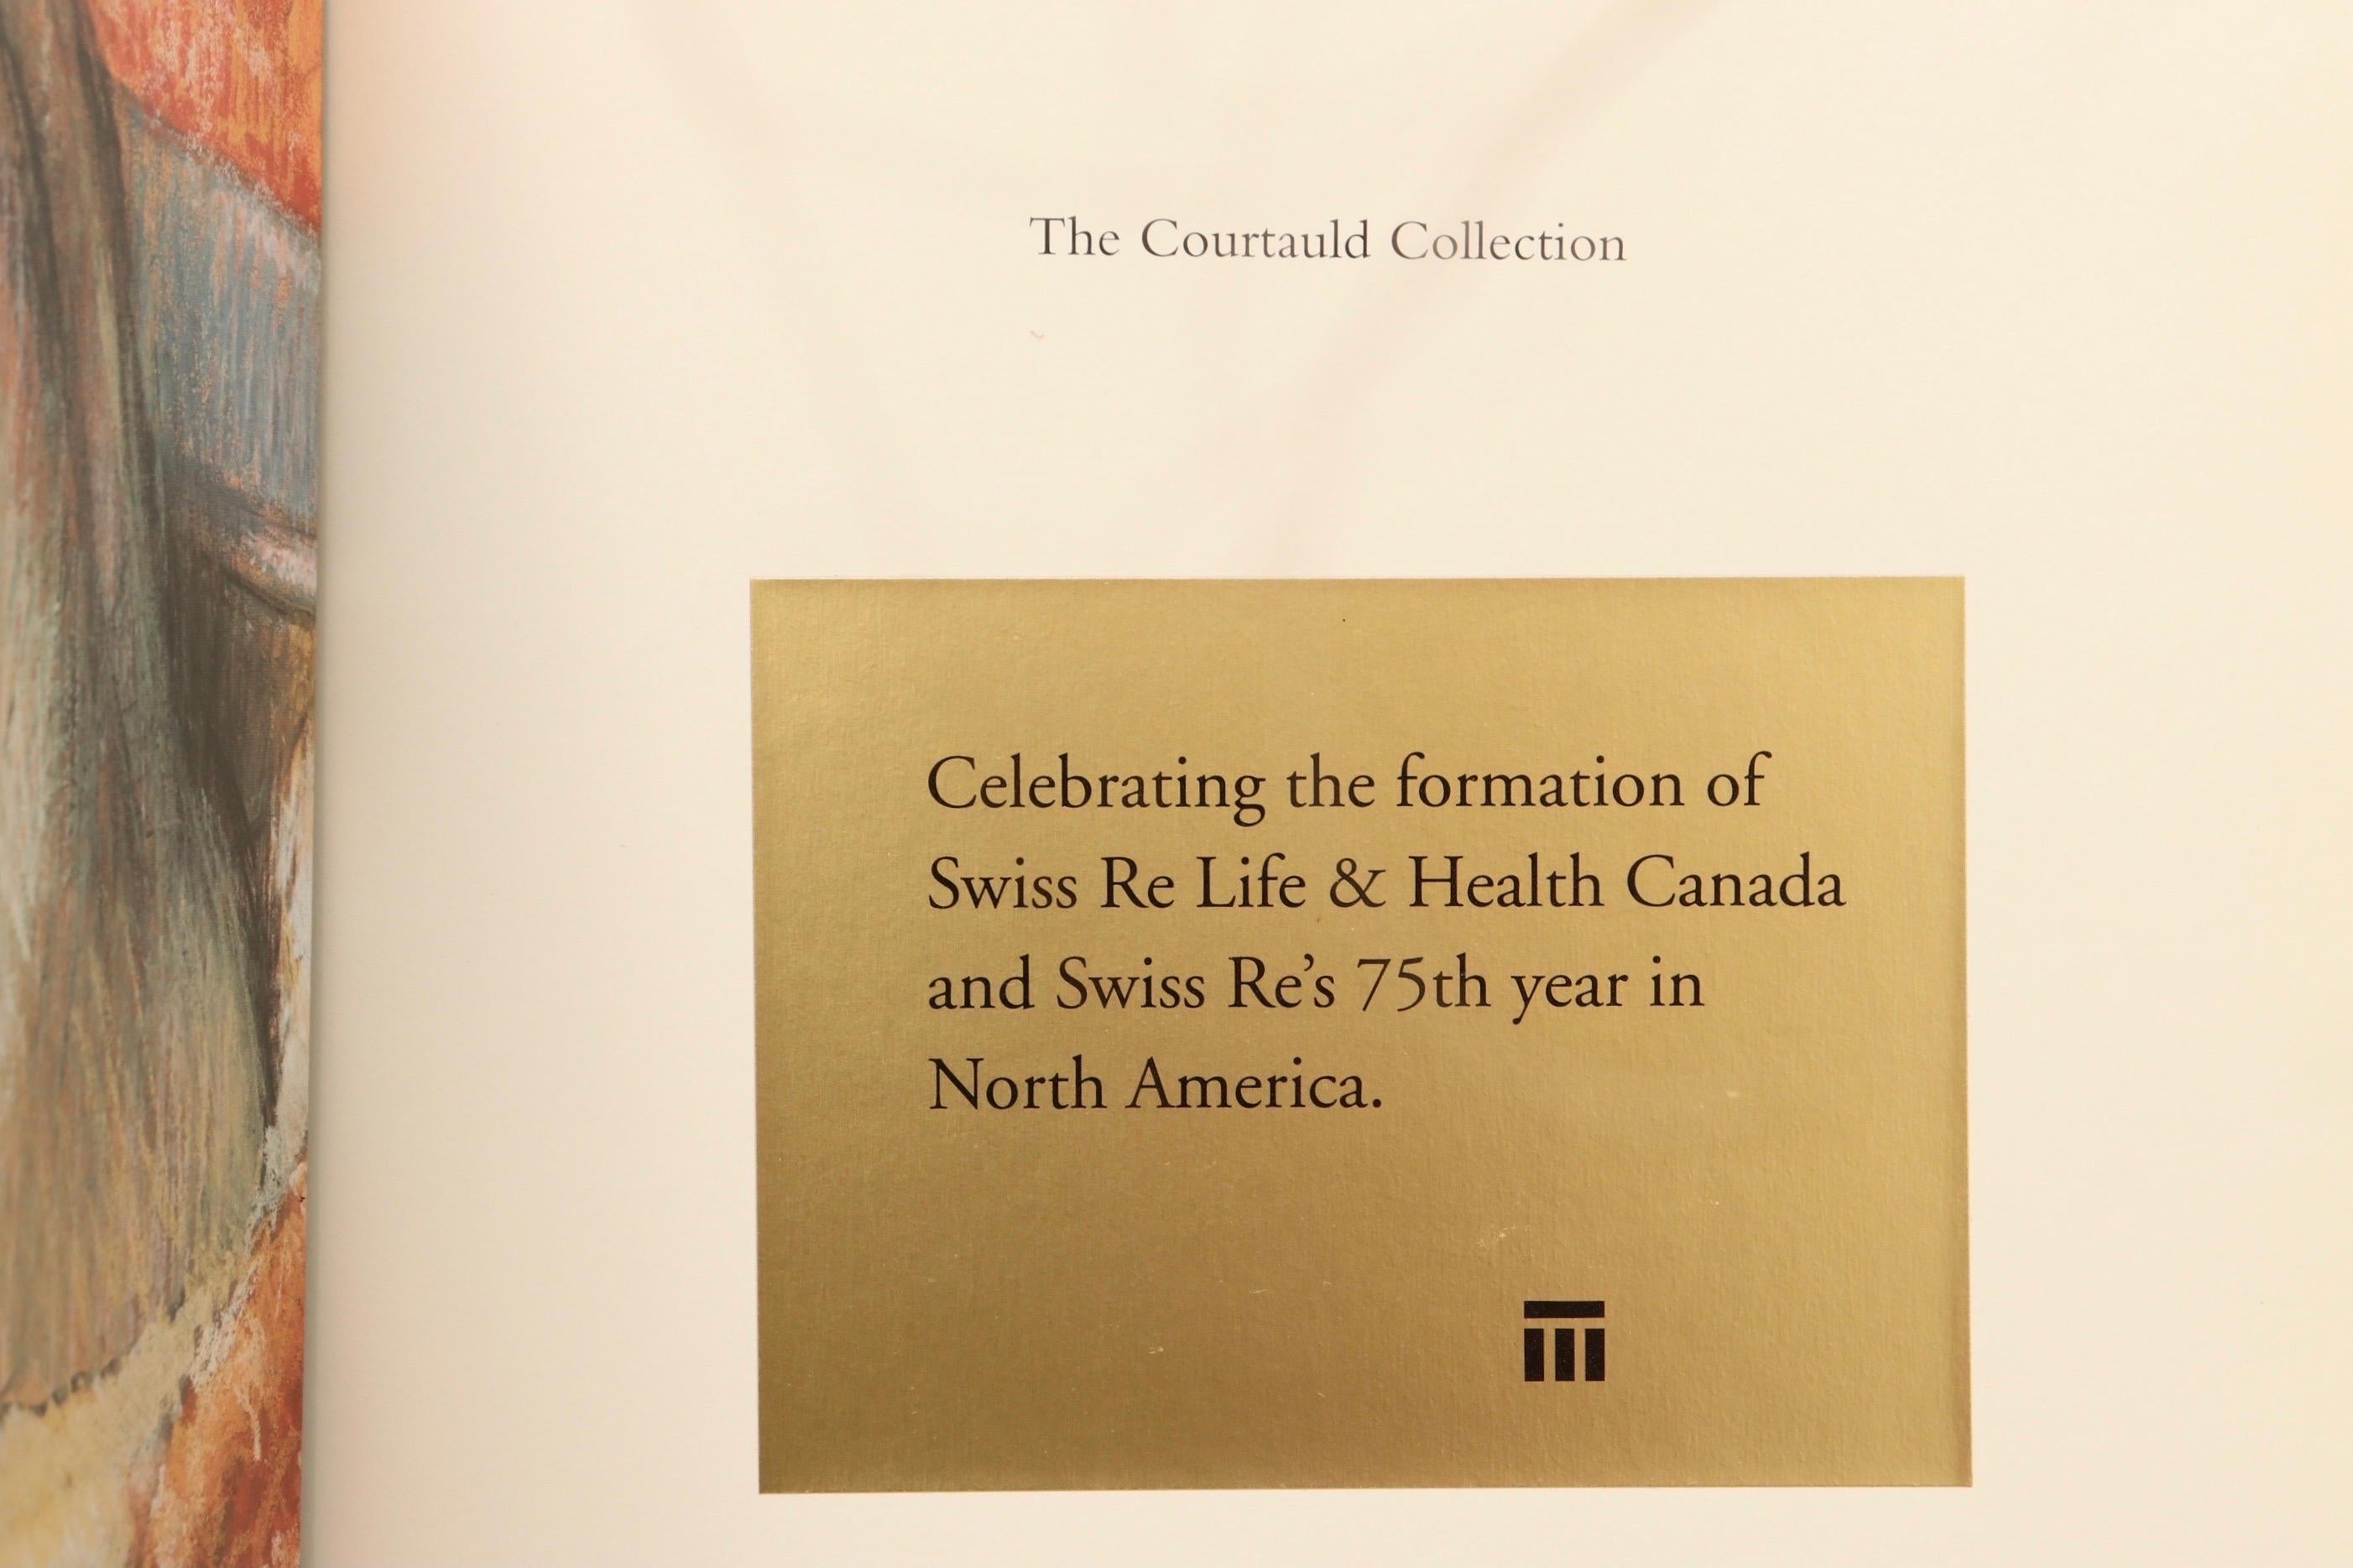 La collection Courtauld, chefs-d'œuvre de l'impressionnisme et du postimpressionnisme par la Gallery Art of Ontario. Livre à couverture souple, publié en 1998, illustré, 144 pages.